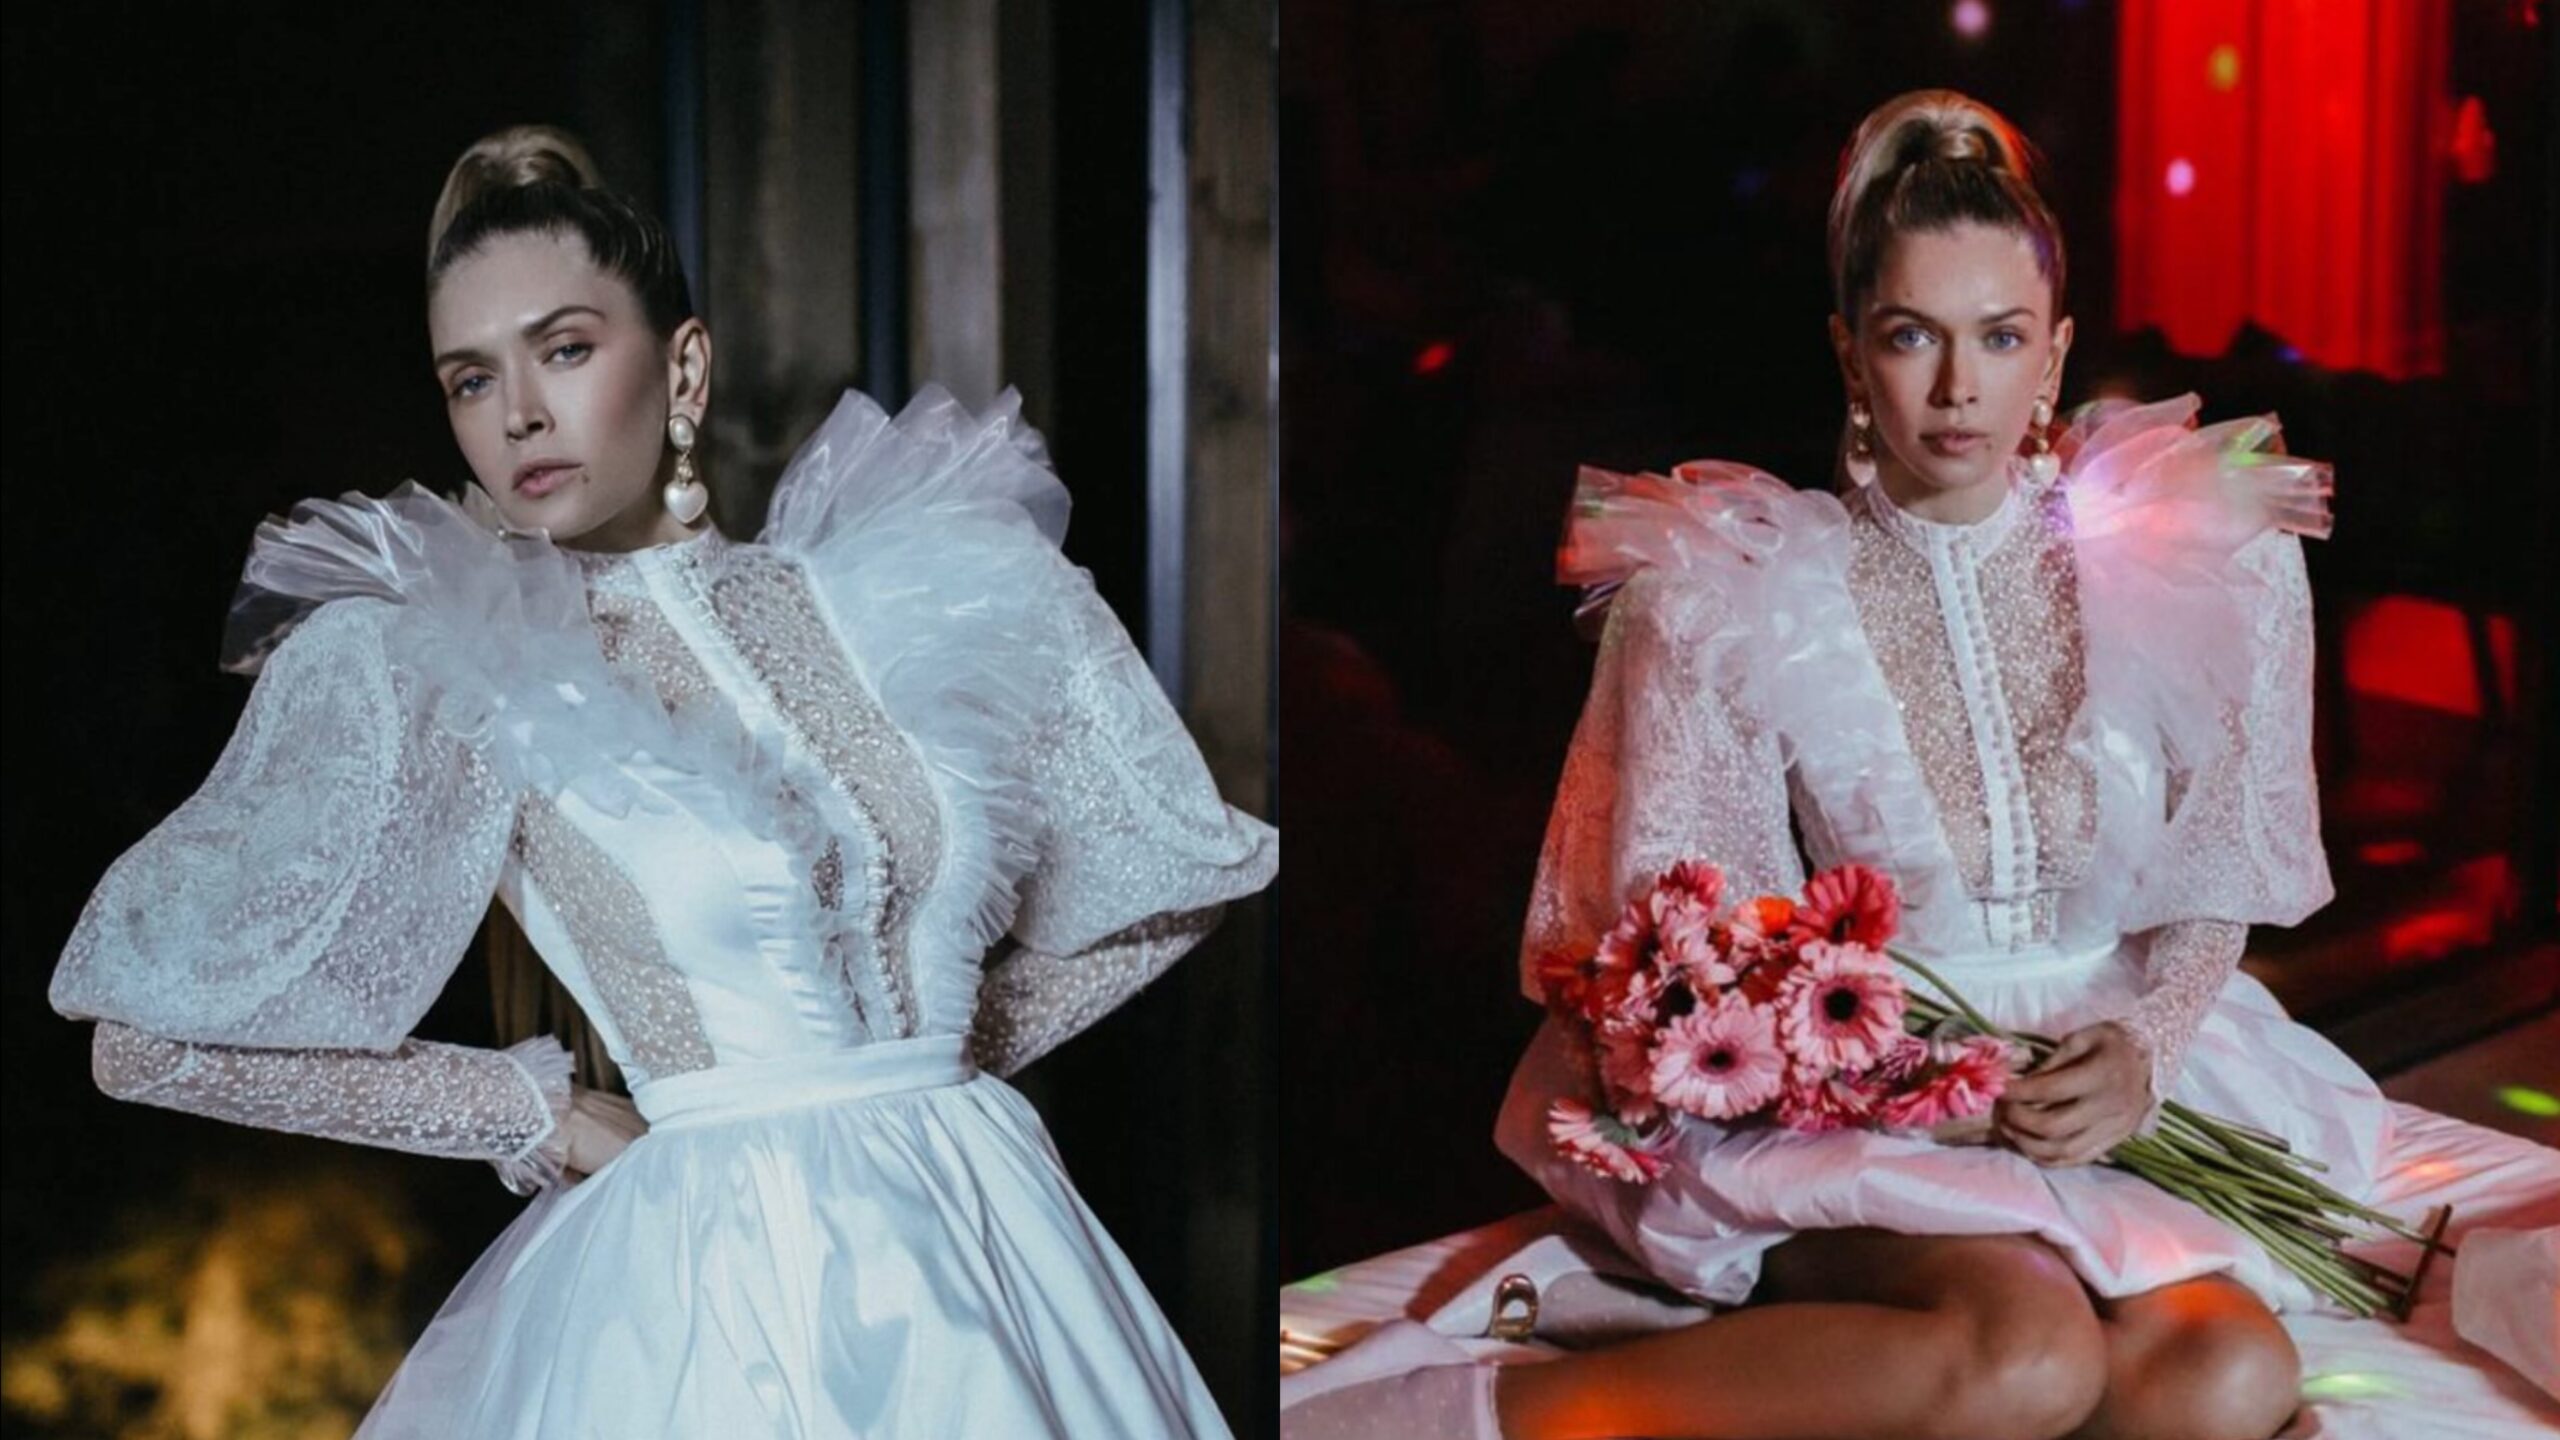 Віра Брежнєва показалась у весільній сукні та фаті, перебуваючи в Іспанії. Фото з Instagram @ververa